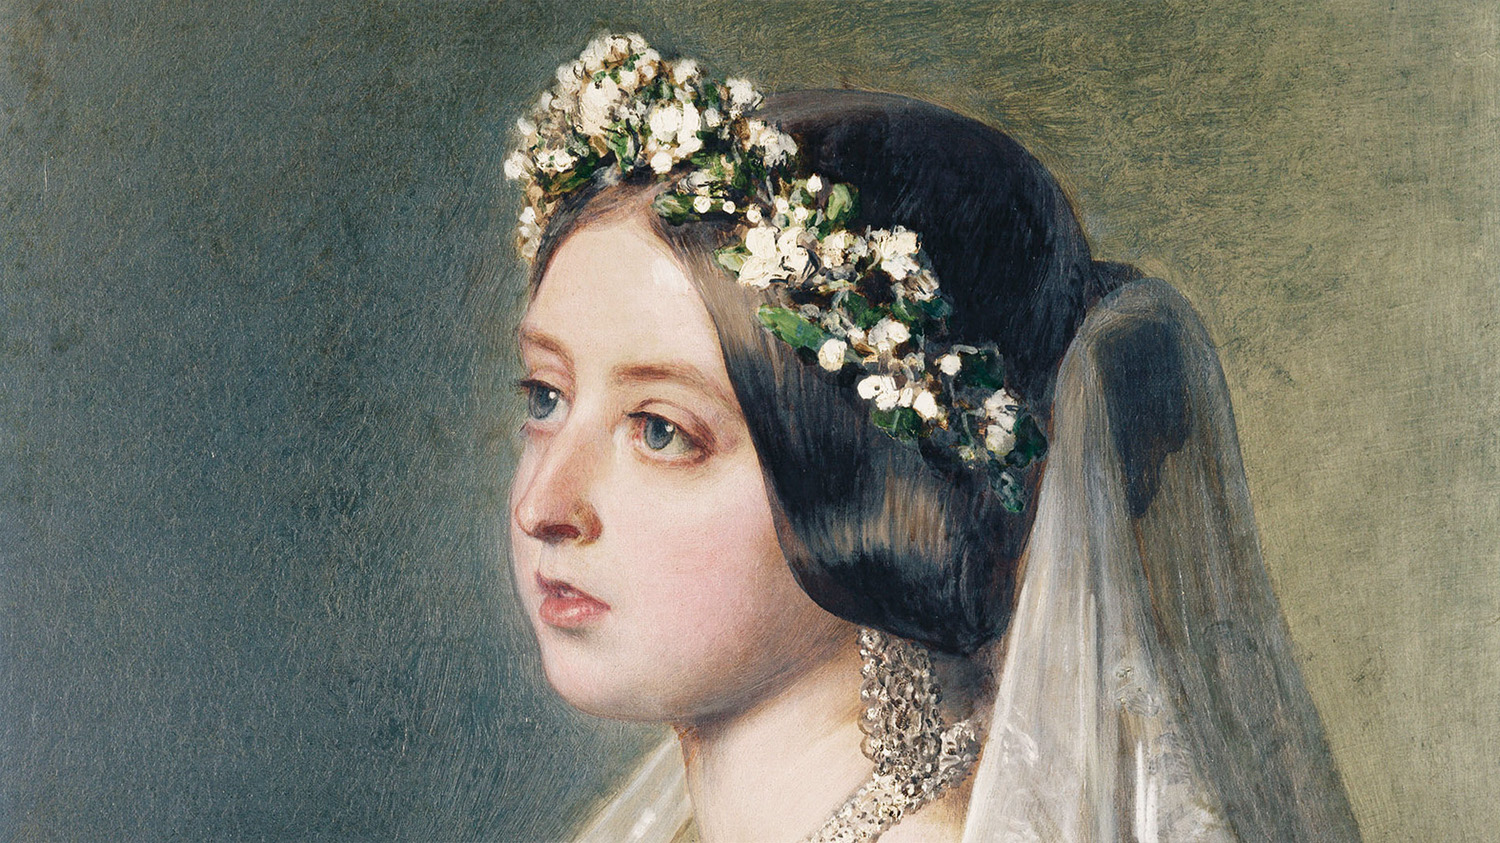 Målning av drottning Victoria av England. Klädd som brud sitter och och tittar åt vänster, ur bild. Hon har en krans av gröna blad och vita blommor och en skir, vit slöja i spets över sitt uppsatta blanka hår. Hon är blek med rosiga kinder.